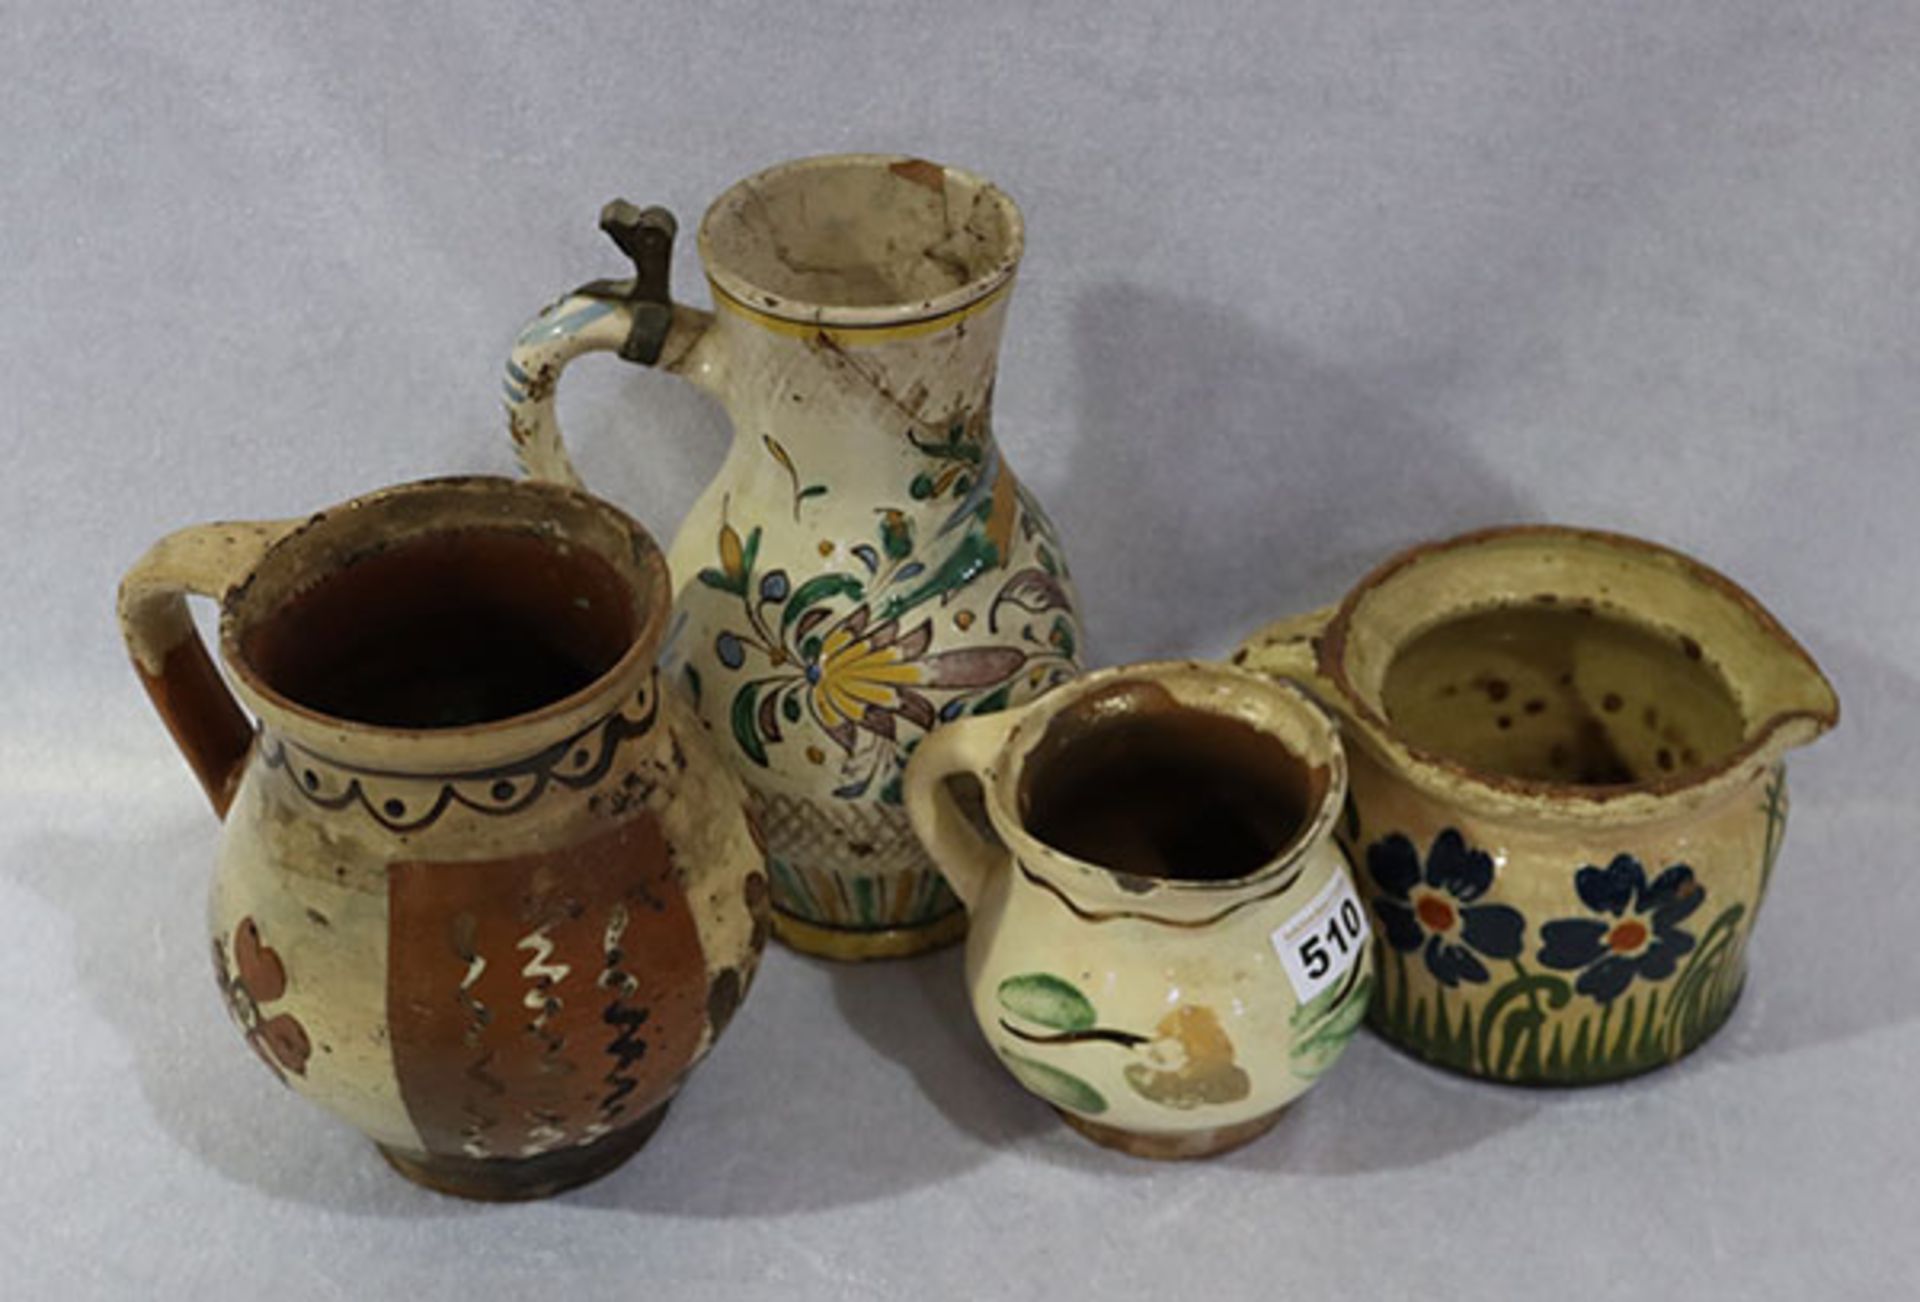 Konvolut von 4 Keramik Henkelkrügen mit Floraldekor, 18./19. Jahrhundert, beschädigt und geklebt,